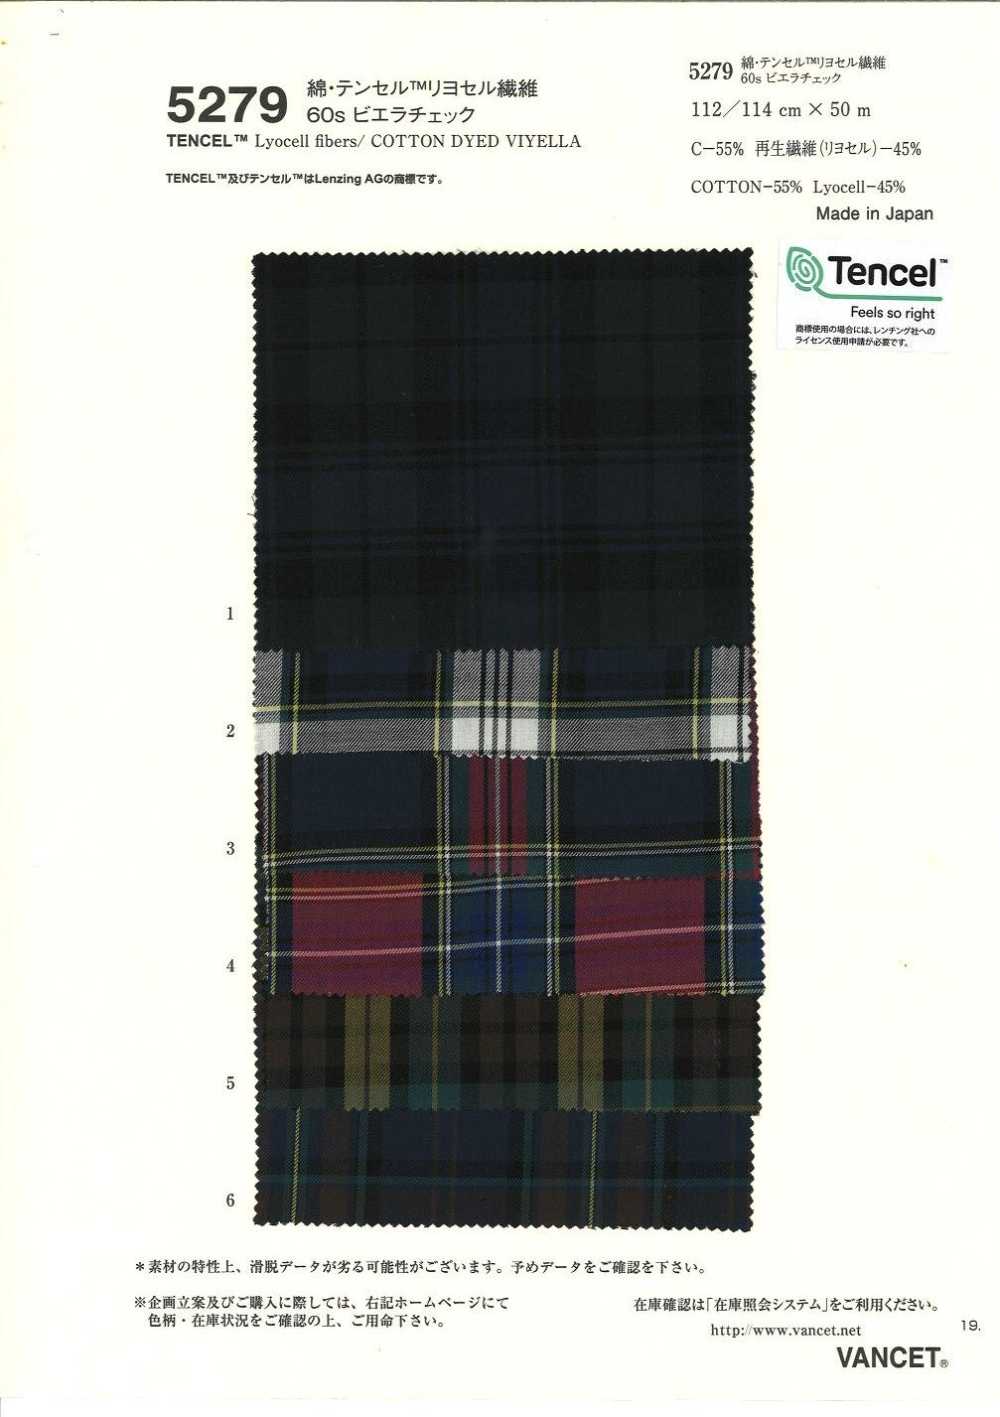 5279 C/TENCEL 60 Hilos Viyella Check[Fabrica Textil] VANCET